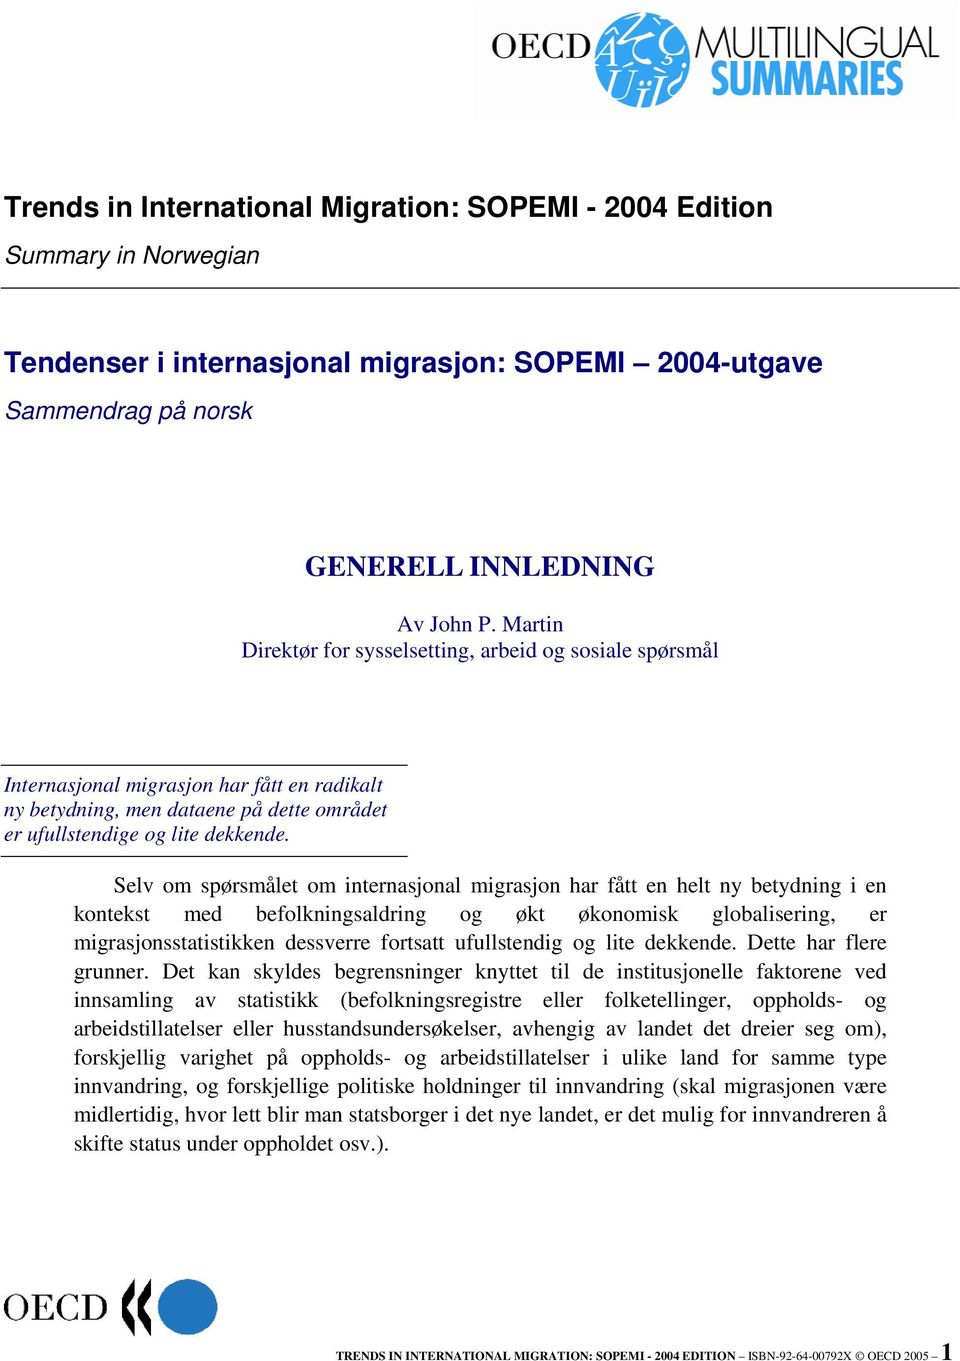 Selv om spørsmålet om internasjonal migrasjon har fått en helt ny betydning i en kontekst med befolkningsaldring og økt økonomisk globalisering, er migrasjonsstatistikken dessverre fortsatt